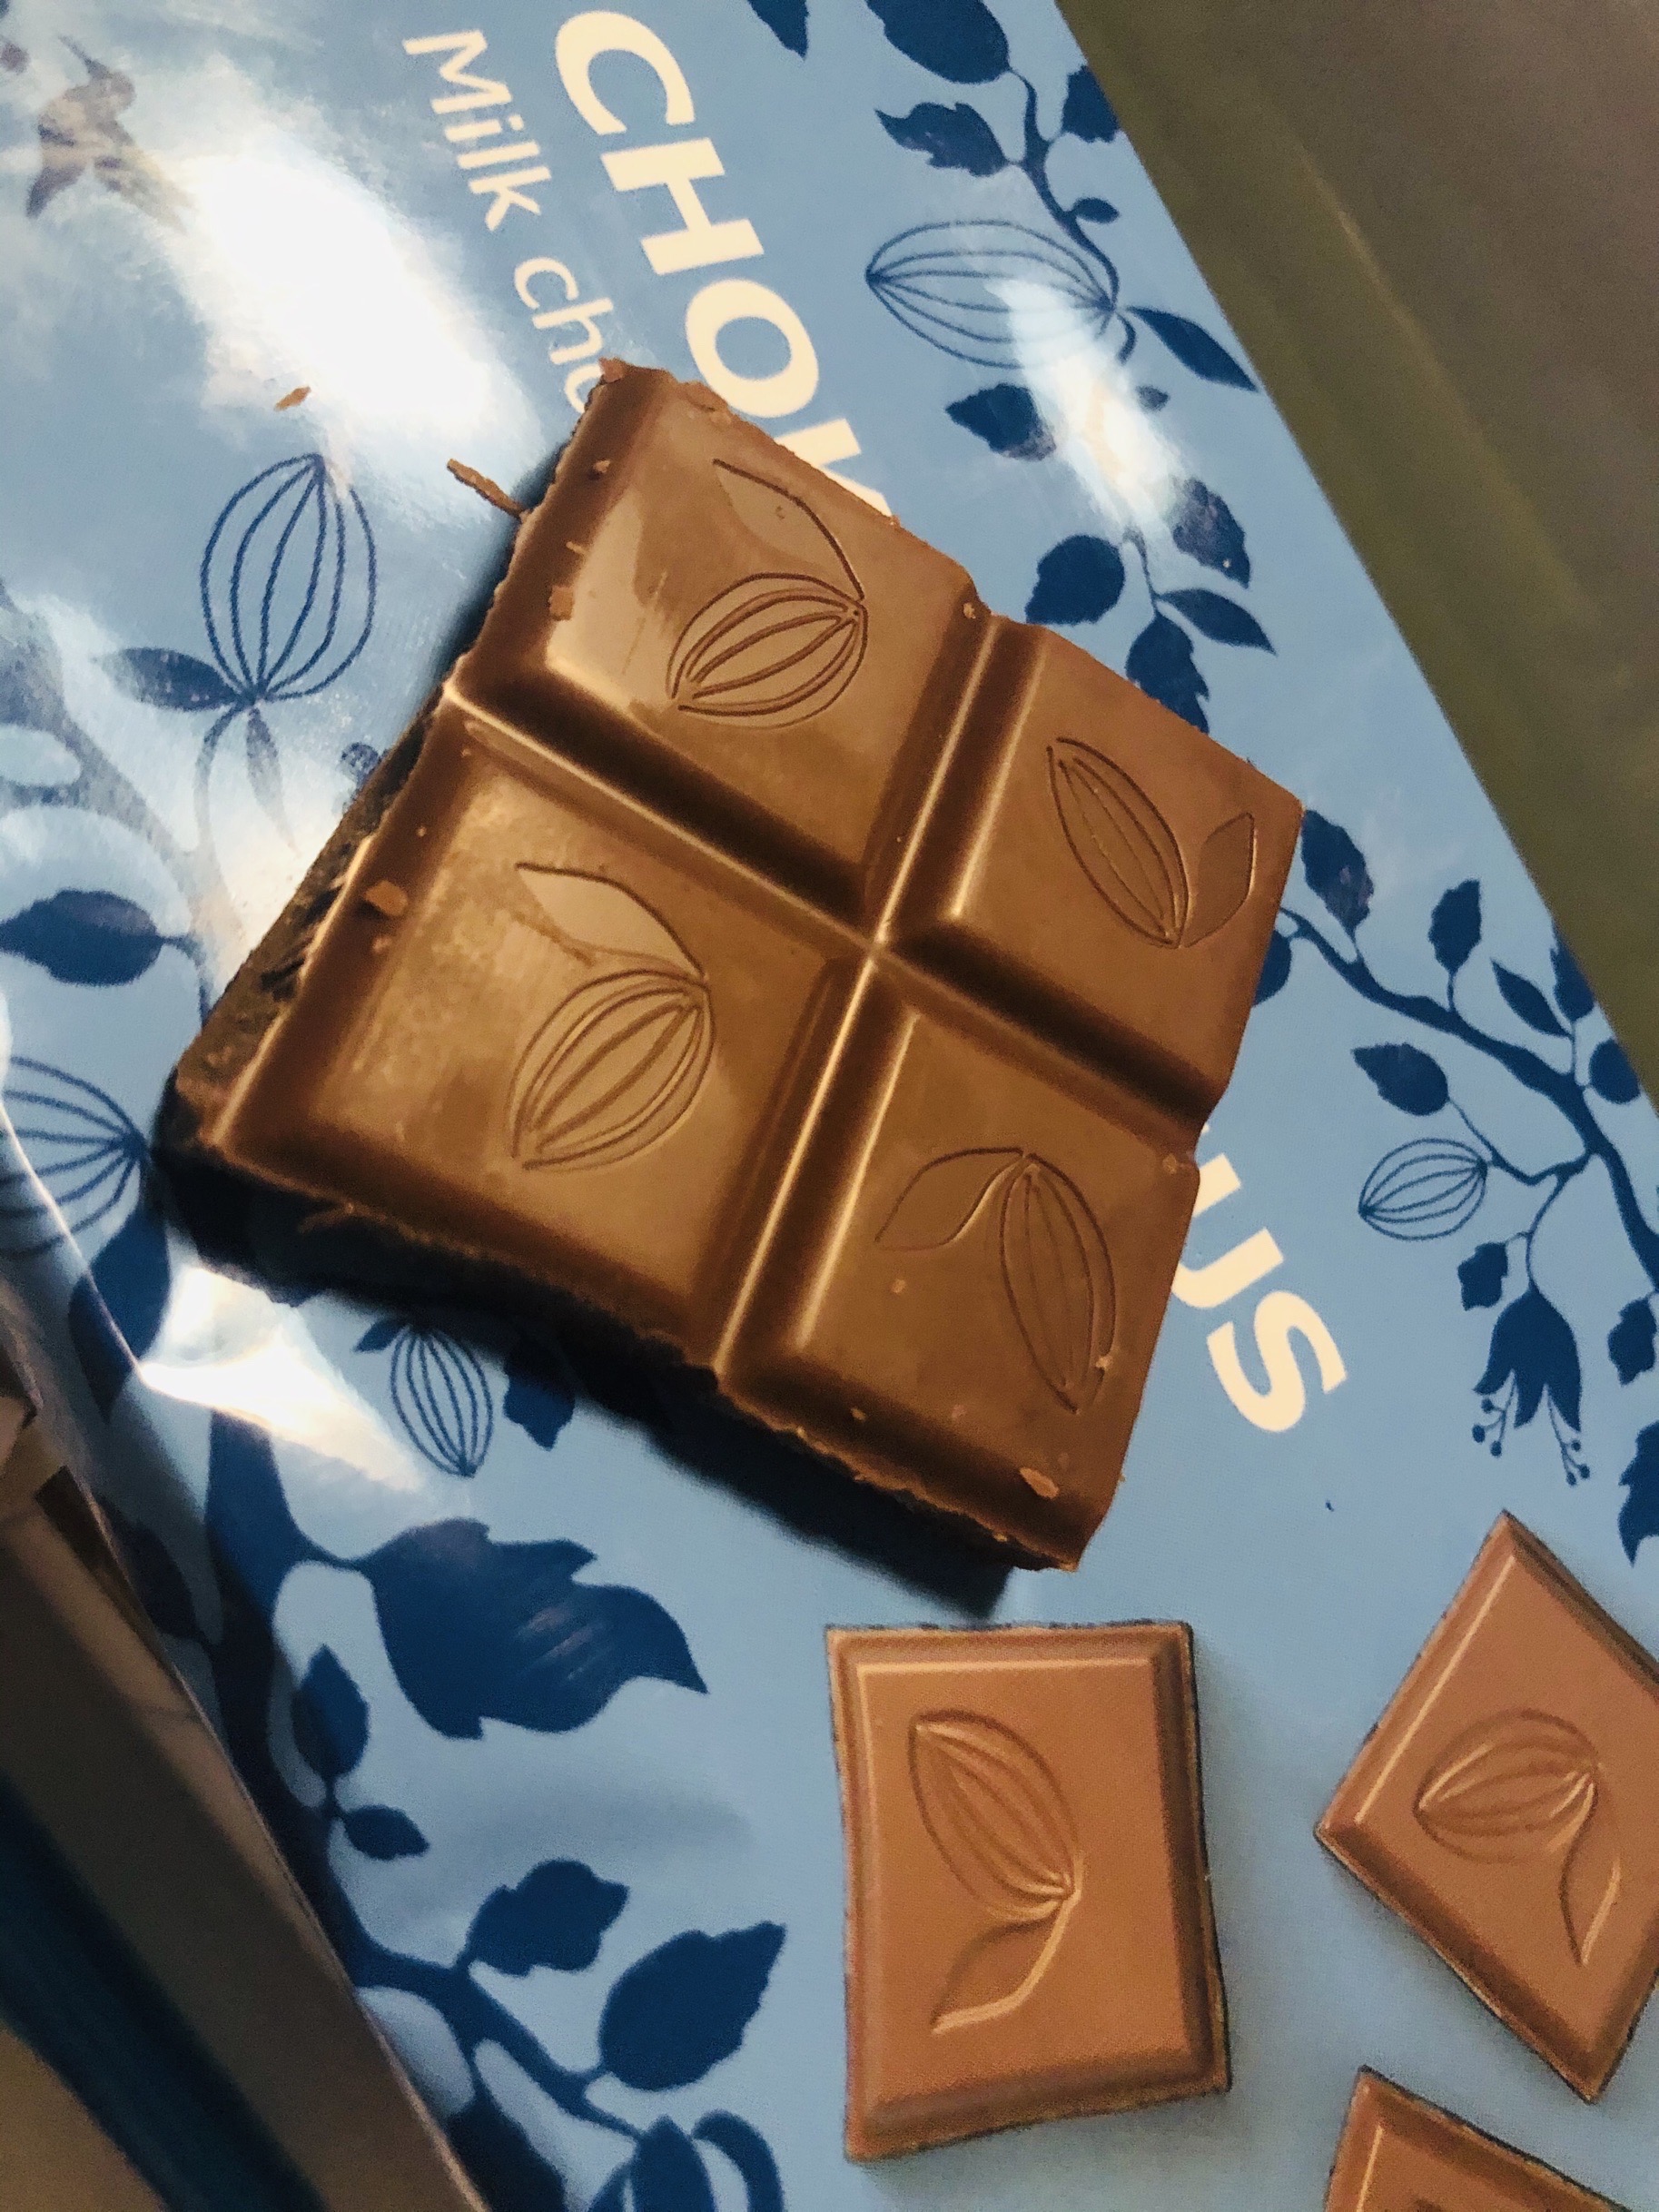 青岛宜家的瑞典巧克力